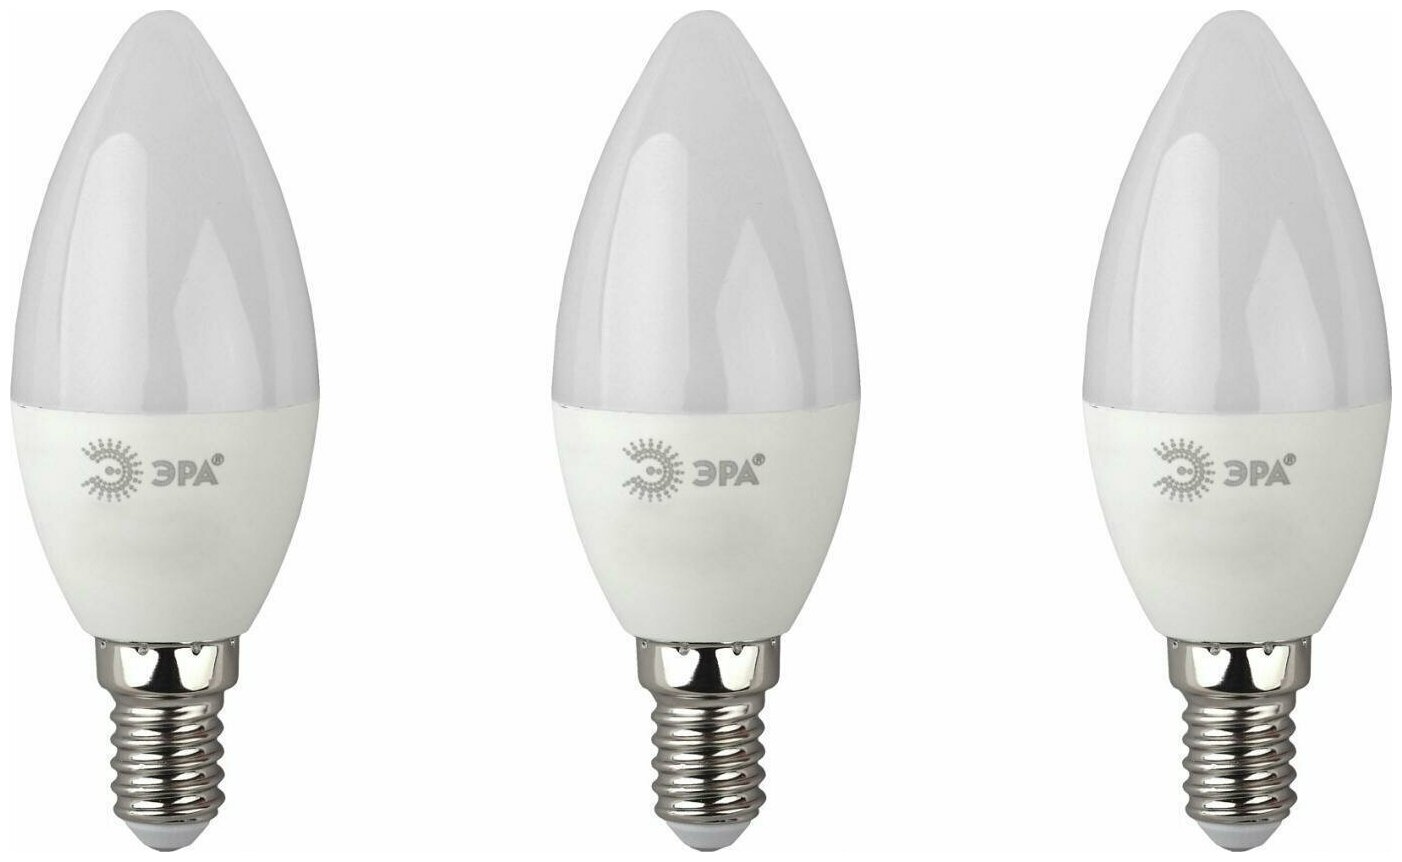 Светодиодная лампа ЭРА Eco 10W эквивалент 70W 2700K 800Лм E14 свеча (комплект из 3 шт)